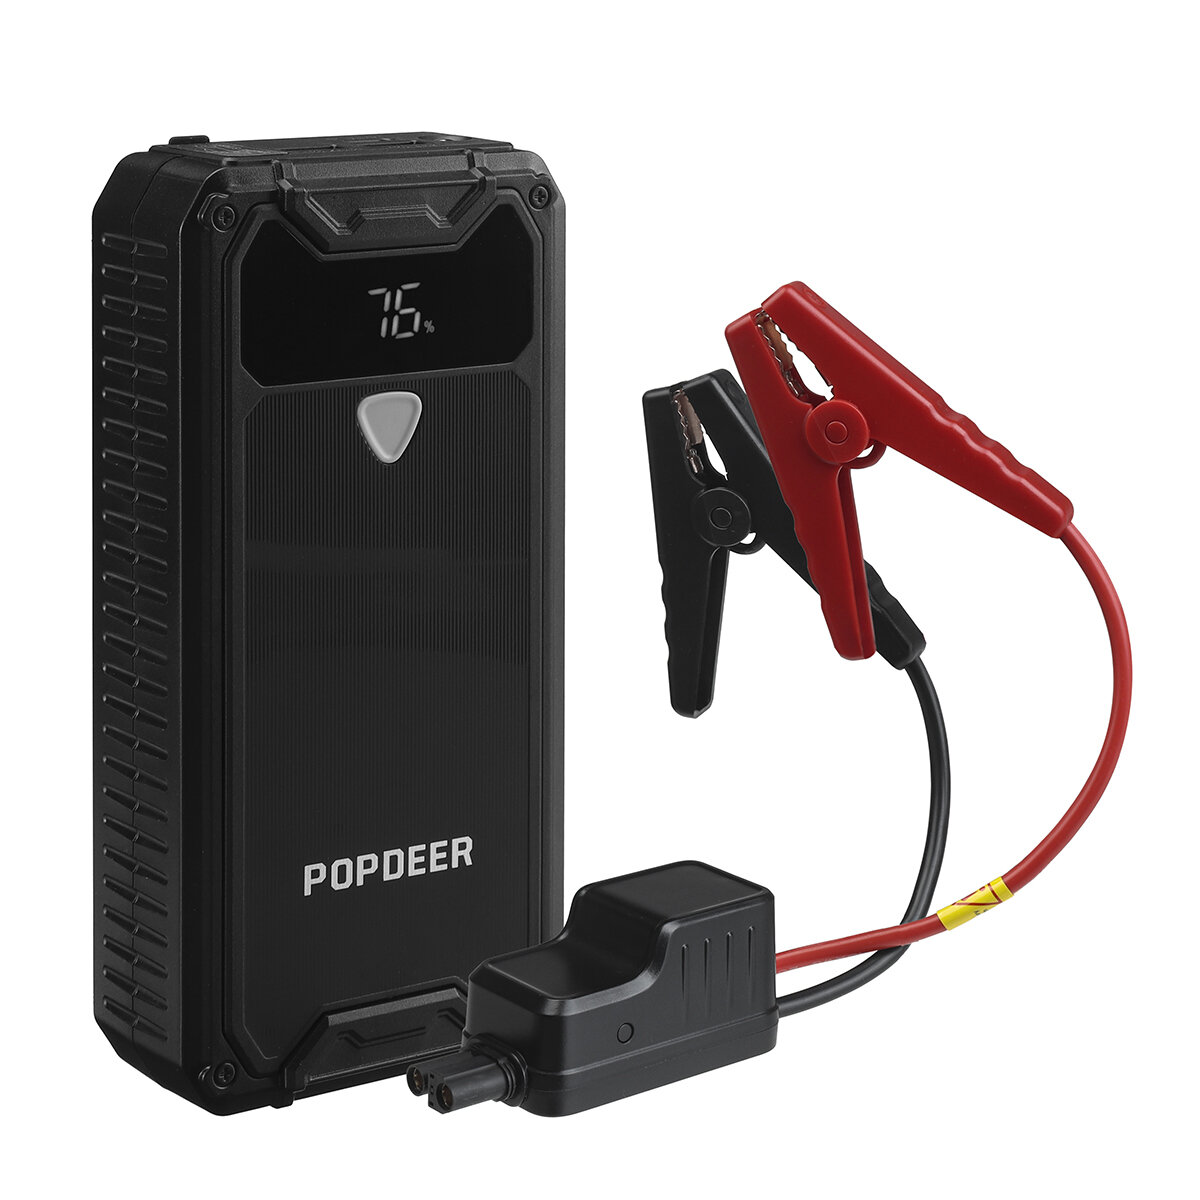 Στα 37.81€ χαμηλότερη τιμή ως σήμερα από αποθήκη Τσεχίας | POPDEER PD-JX1 1500A 15000mAh Portable Car Jump Starter with LED Flashlight Powerbank Emergency Power Supply